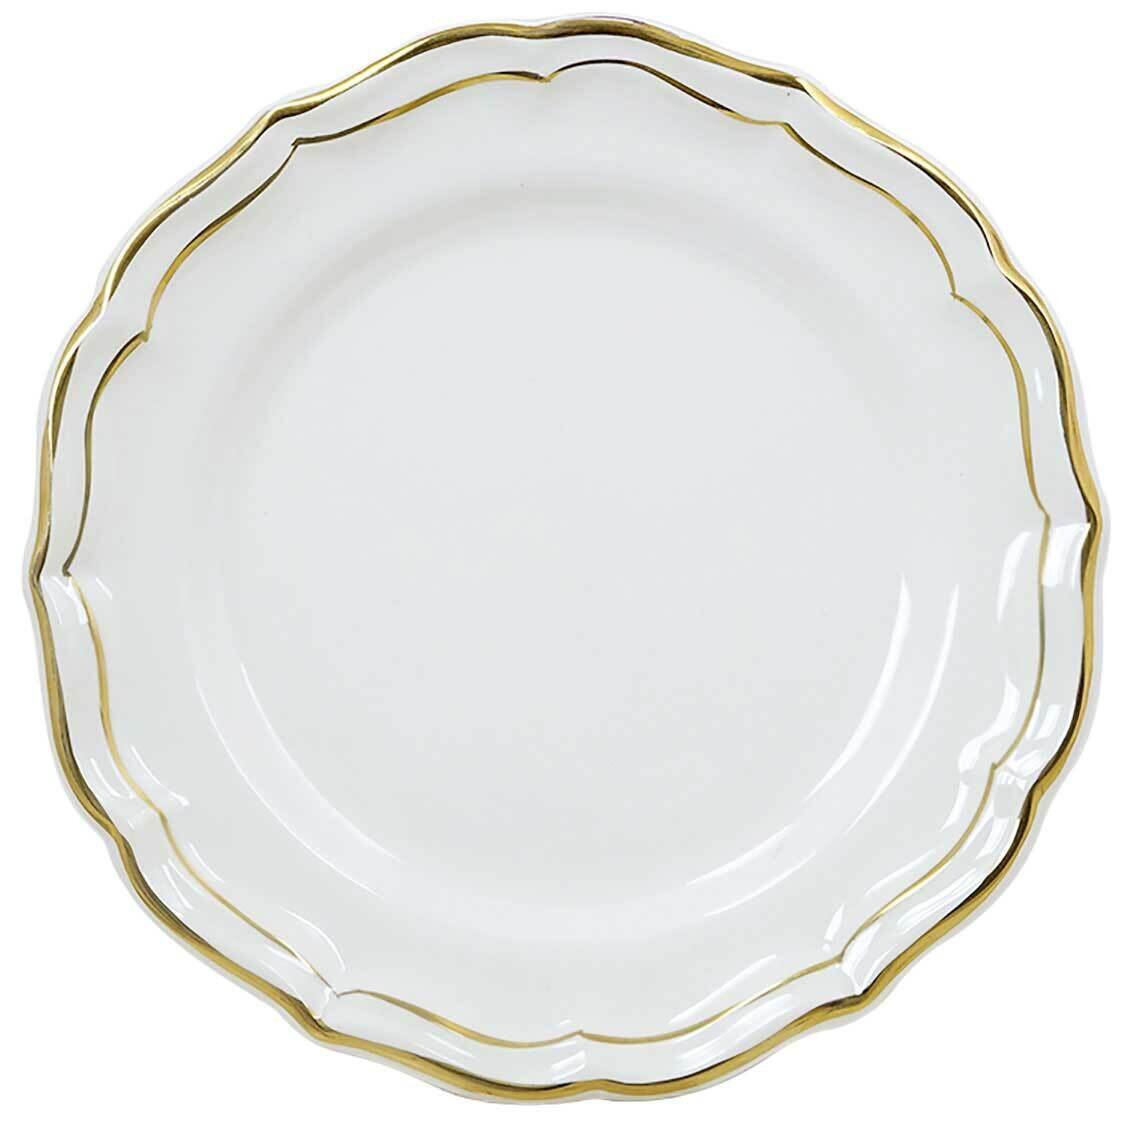 Gien Filet Or Gold Dessert Plate 1837CADE22